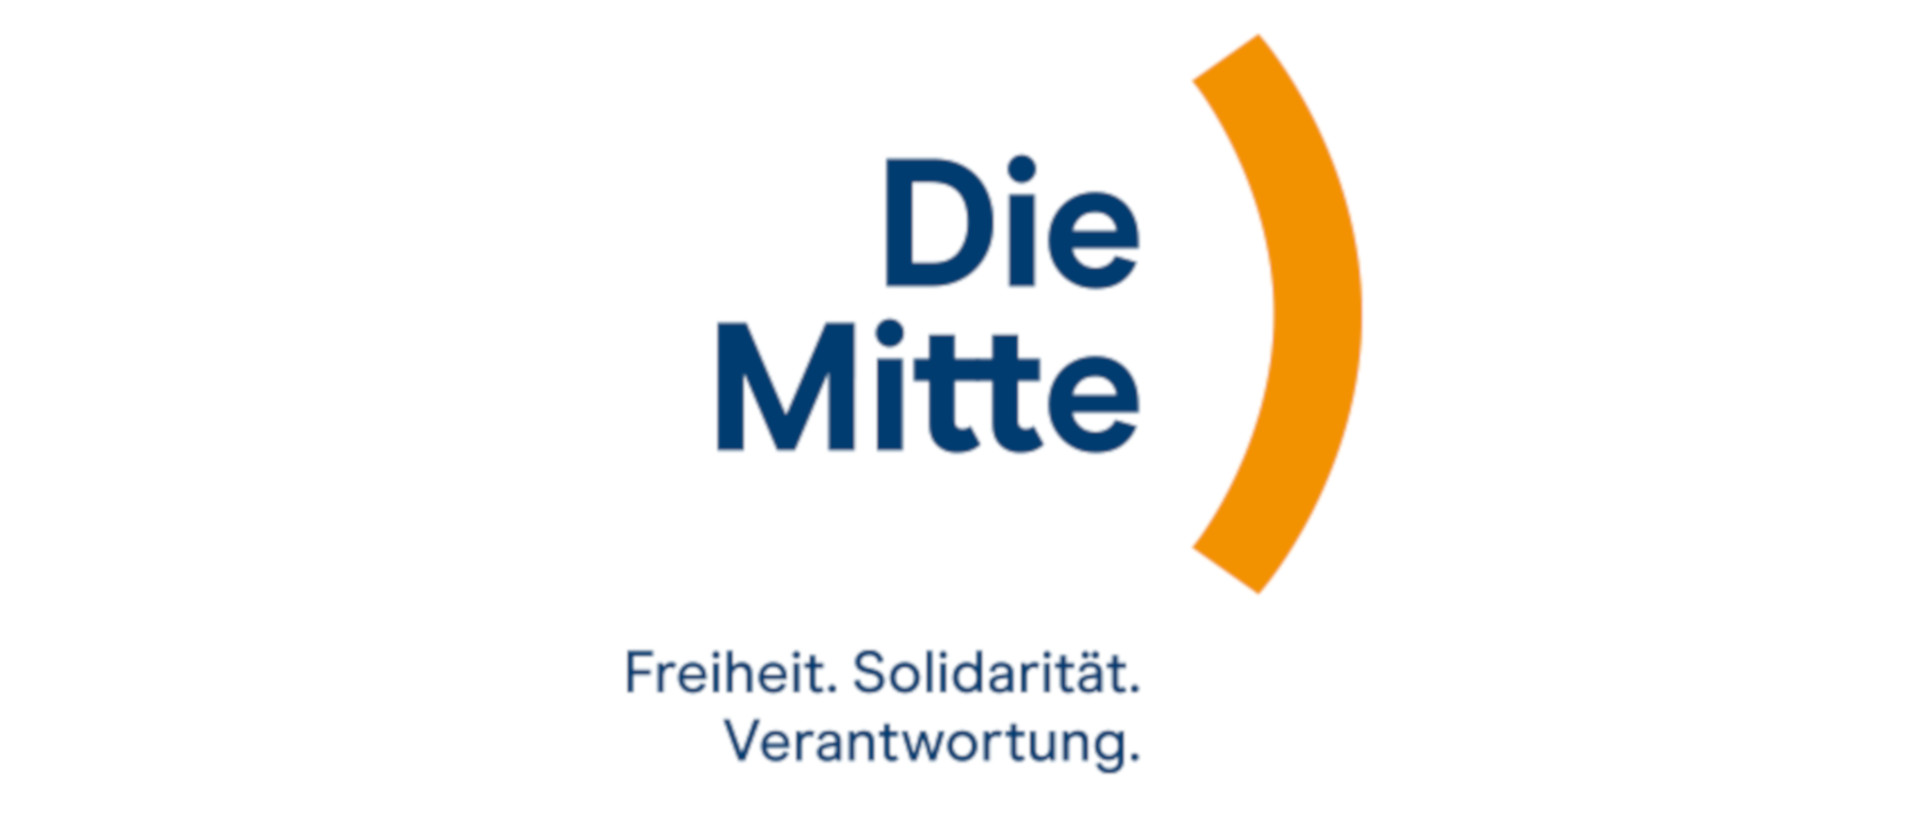 "Die Mitte"-Logo-Vorschlag der Christlichdemokratischen Volkspartei